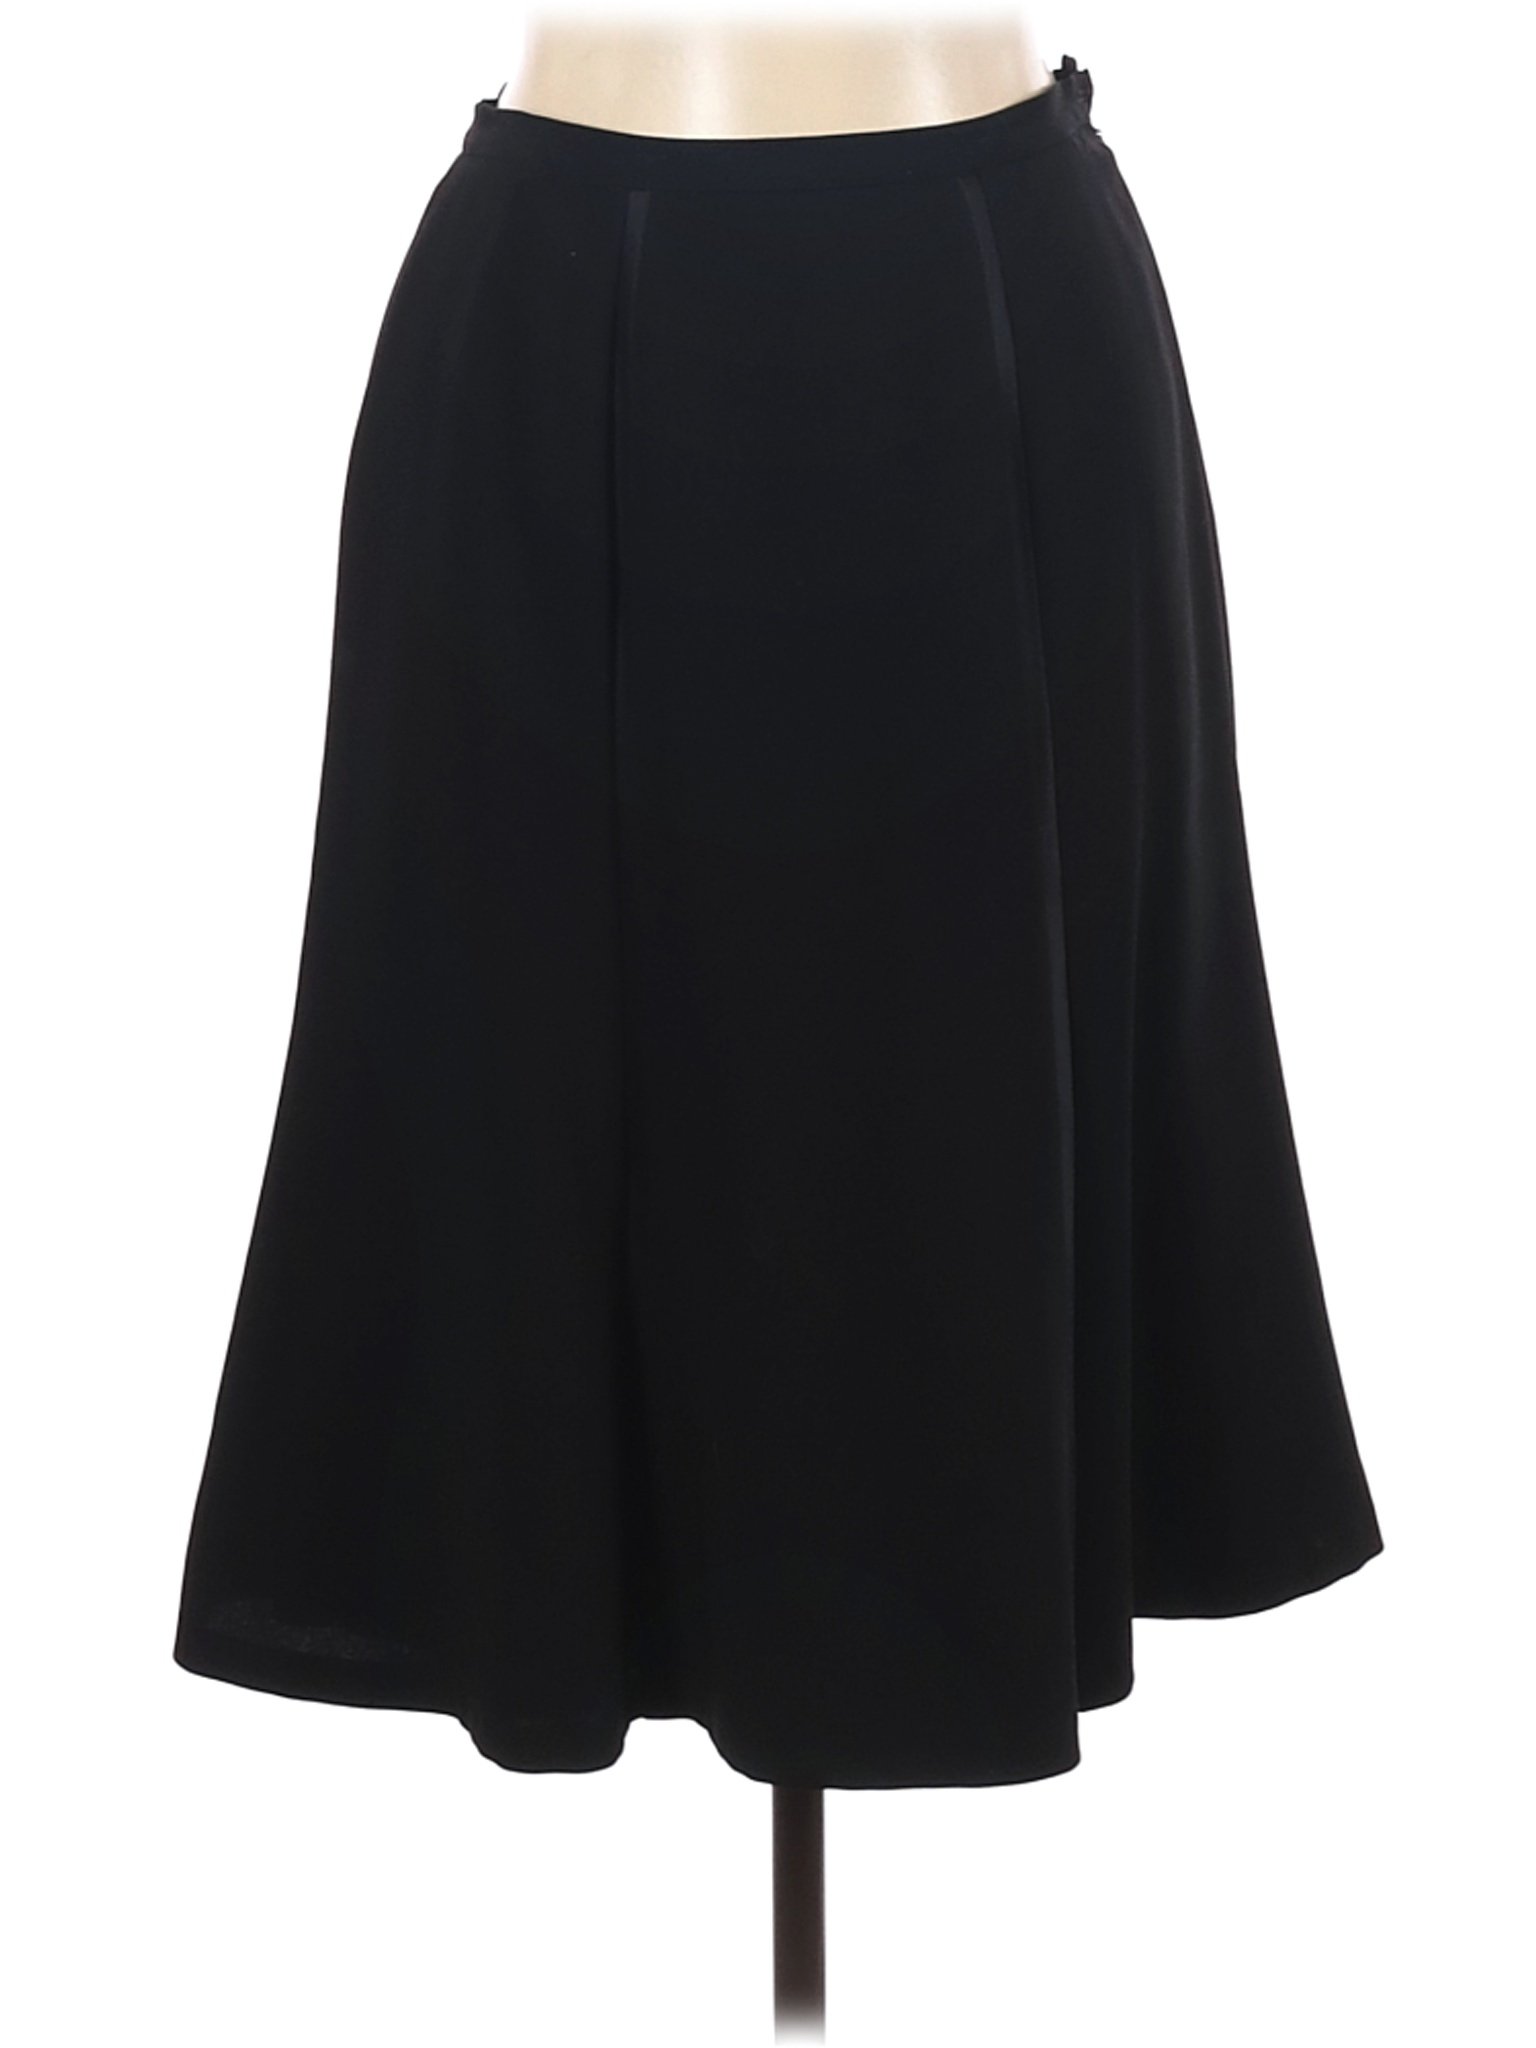 Albert Nipon Women Black Casual Skirt 8 Petites | eBay